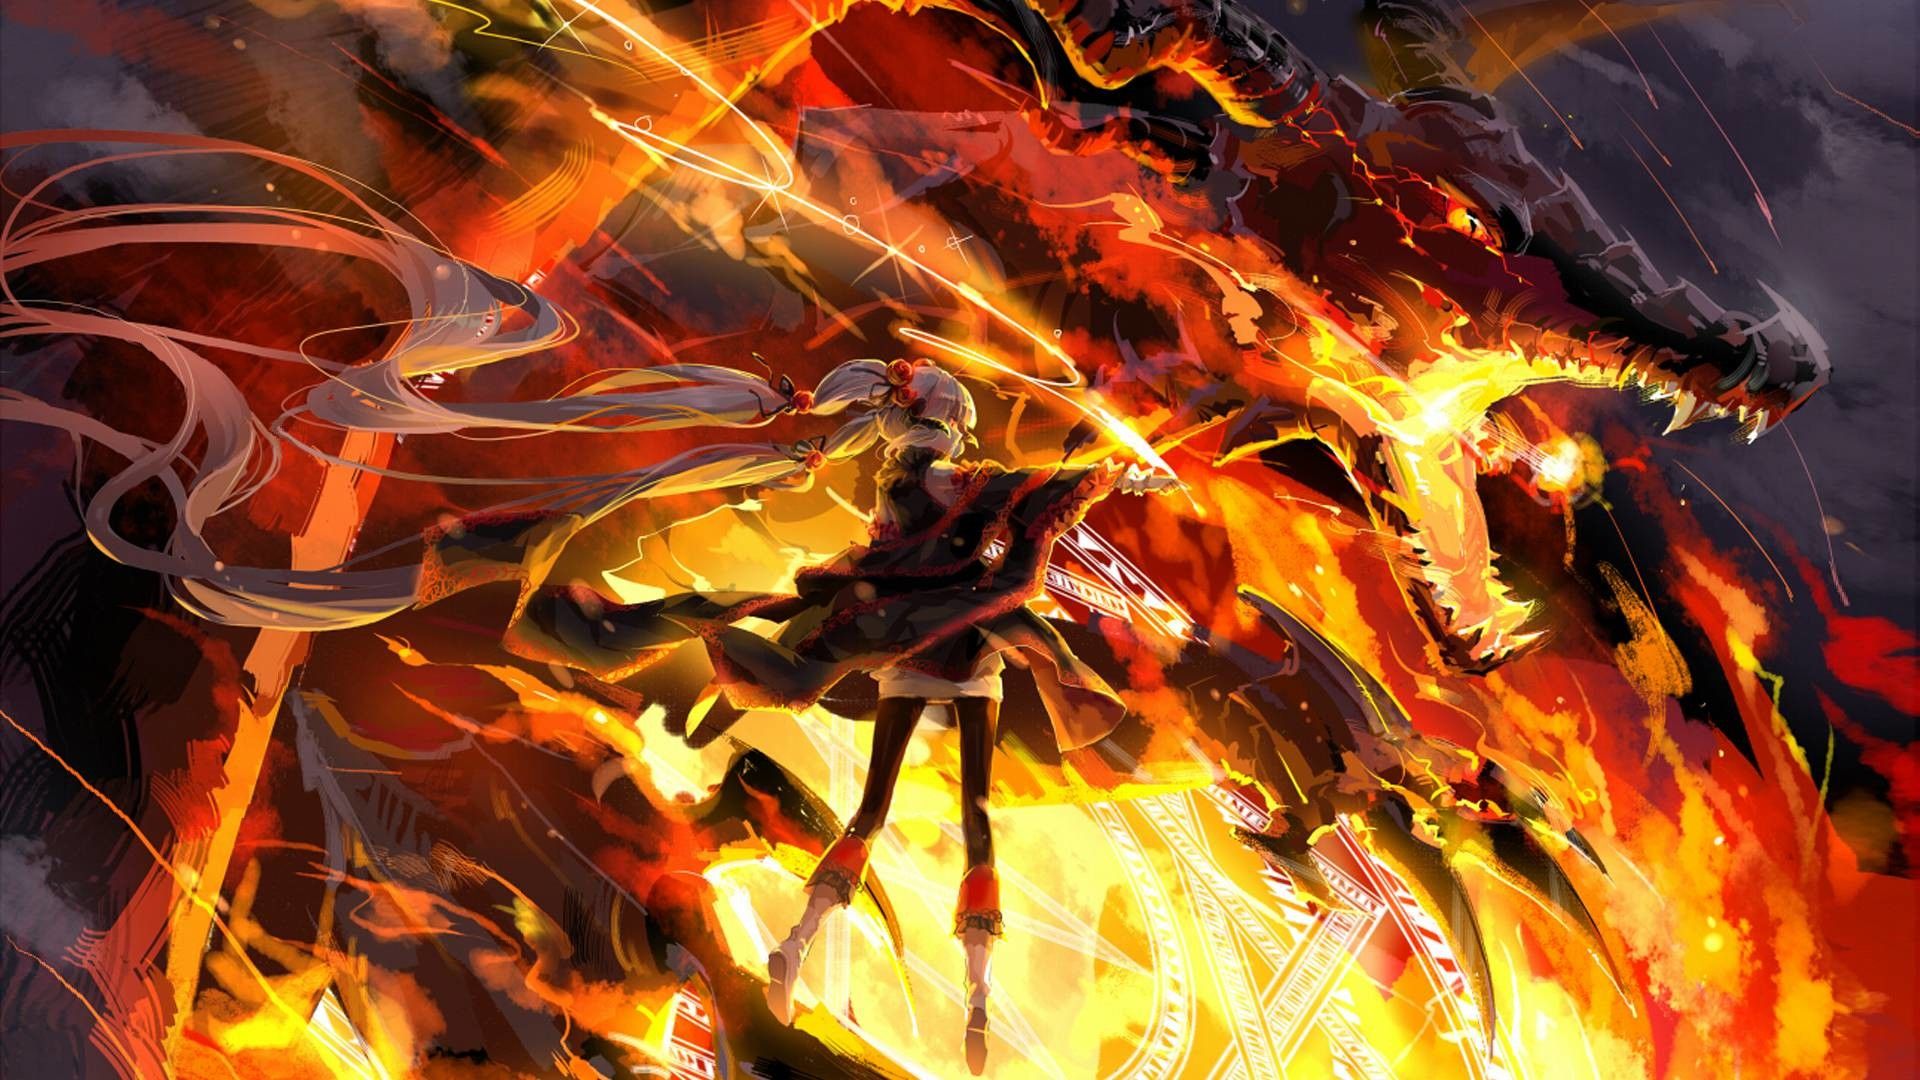 Dragon Anime Art Wallpapers